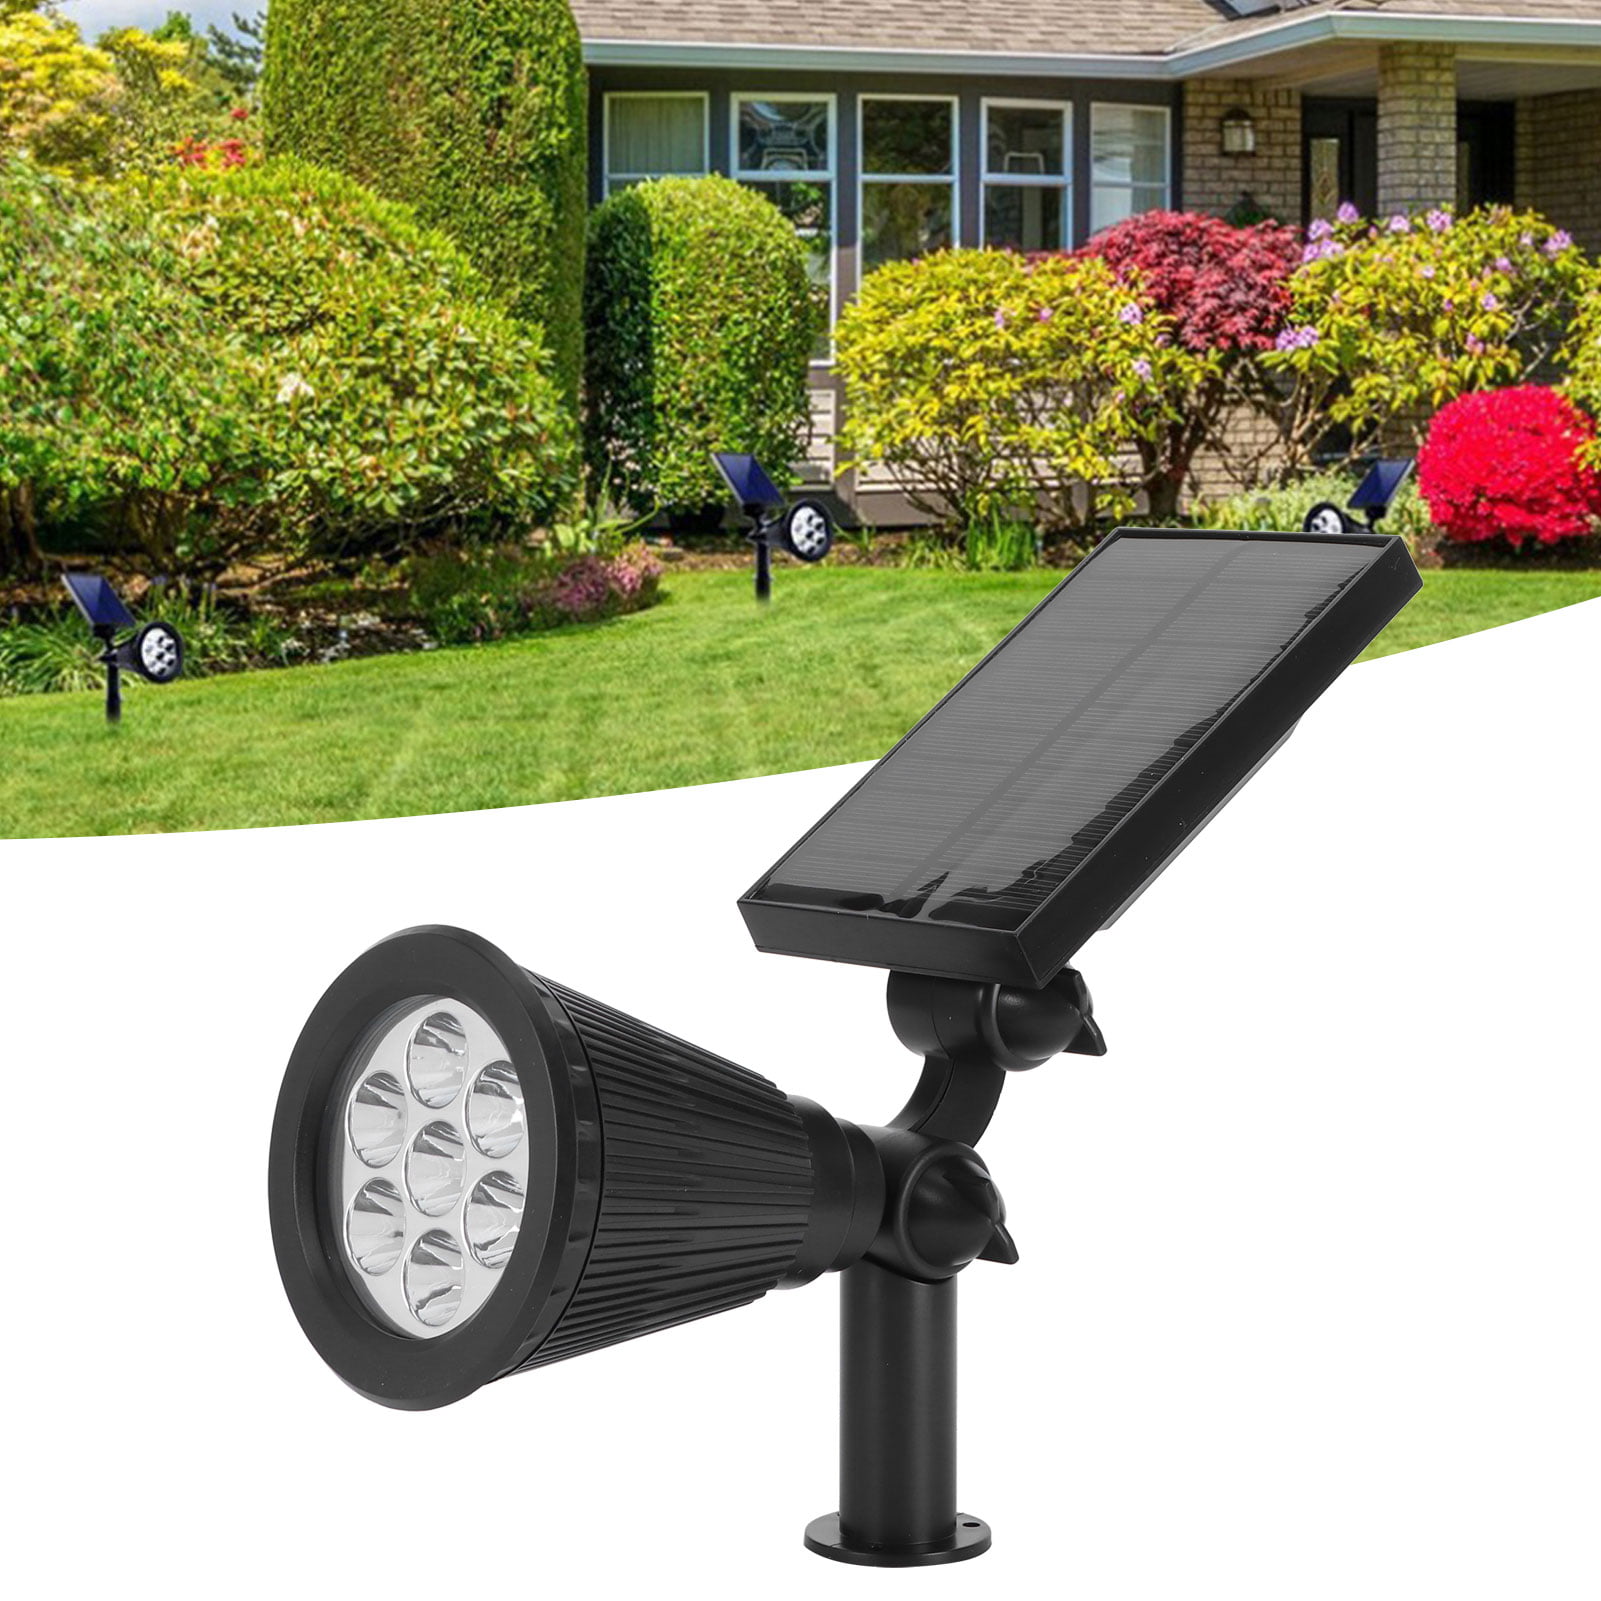 7 LED Solar Power Garden Lamp Lawn Outdoor Landscape Light Waterproof Spotlight 